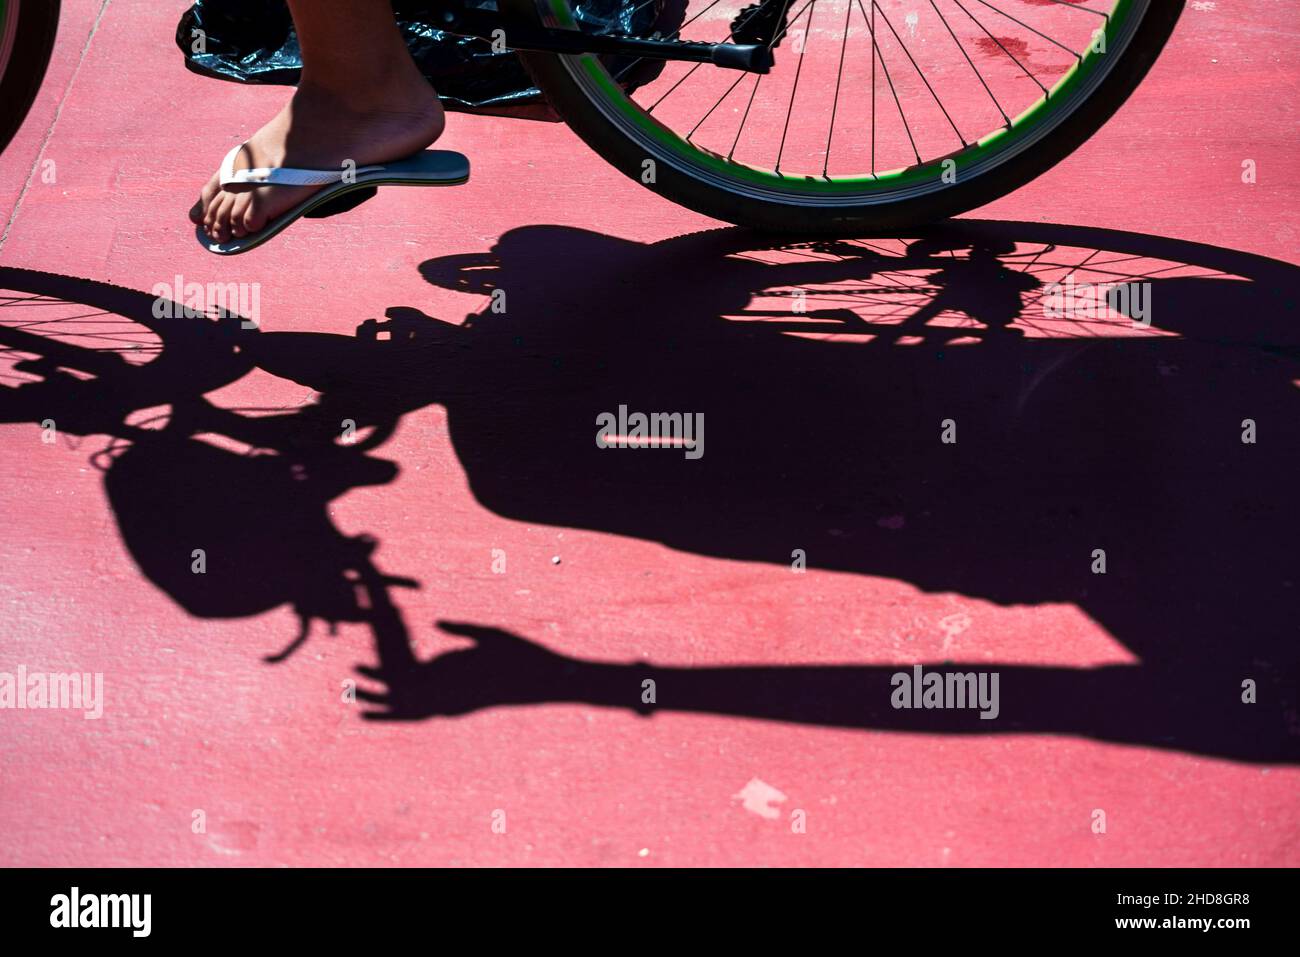 Schatten eines Fahrrads auf dem Radweg in der Stadt Salvador, Brasilien. Stockfoto